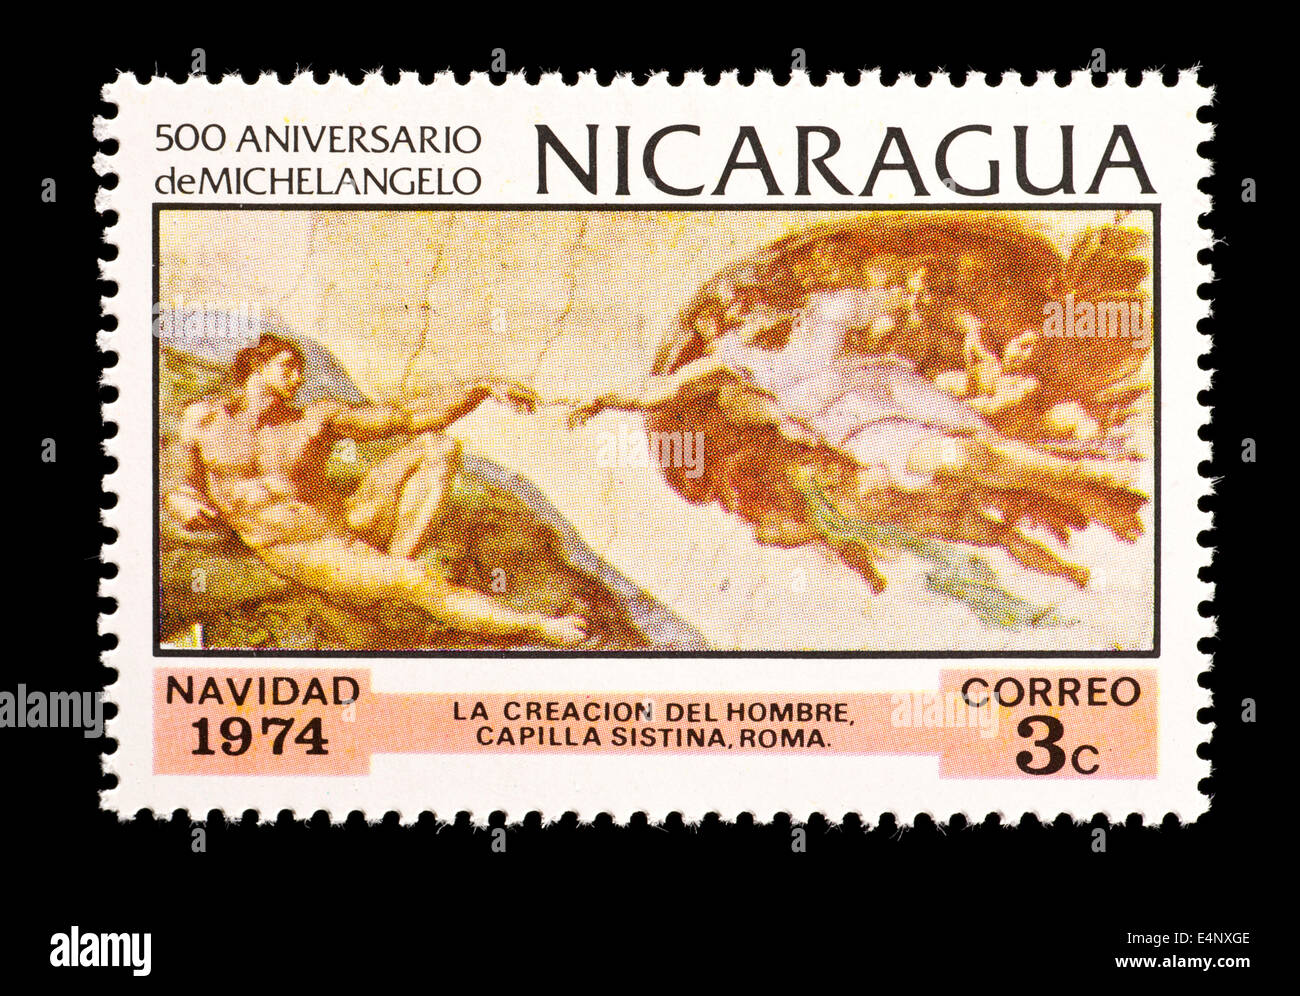 Briefmarke aus Nicaragua, die Darstellung des Michelangelos Gemälde "Die Erschaffung des Adam" aus der Sixtinischen Kapelle. Stockfoto